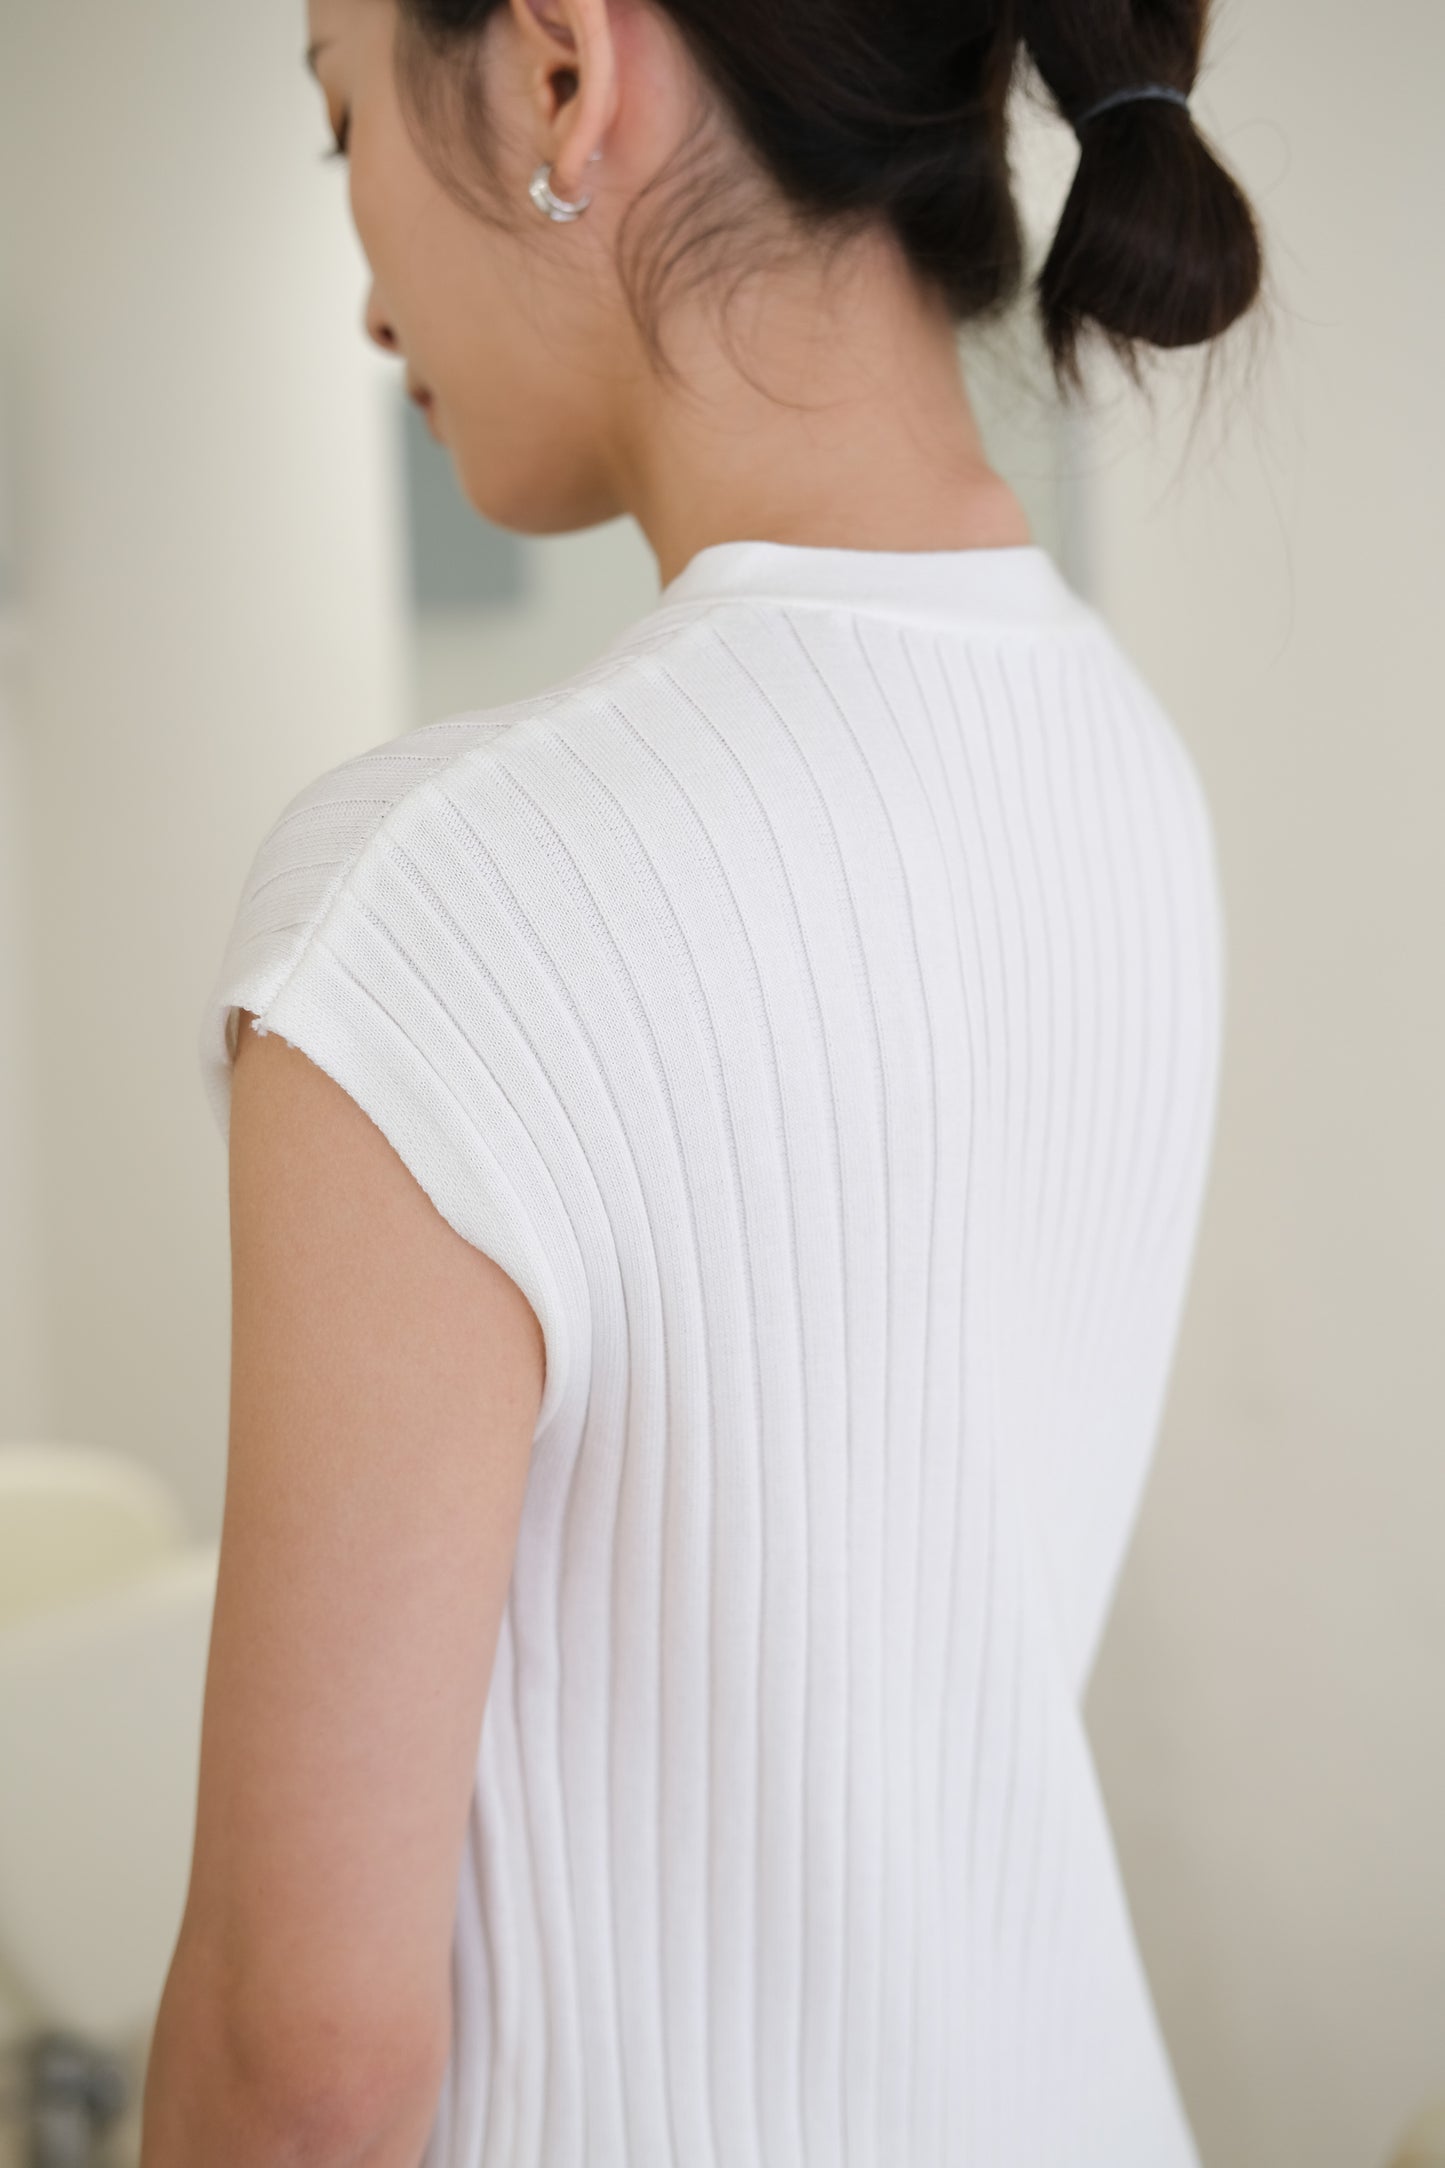 Threaded split knit dress in cream white